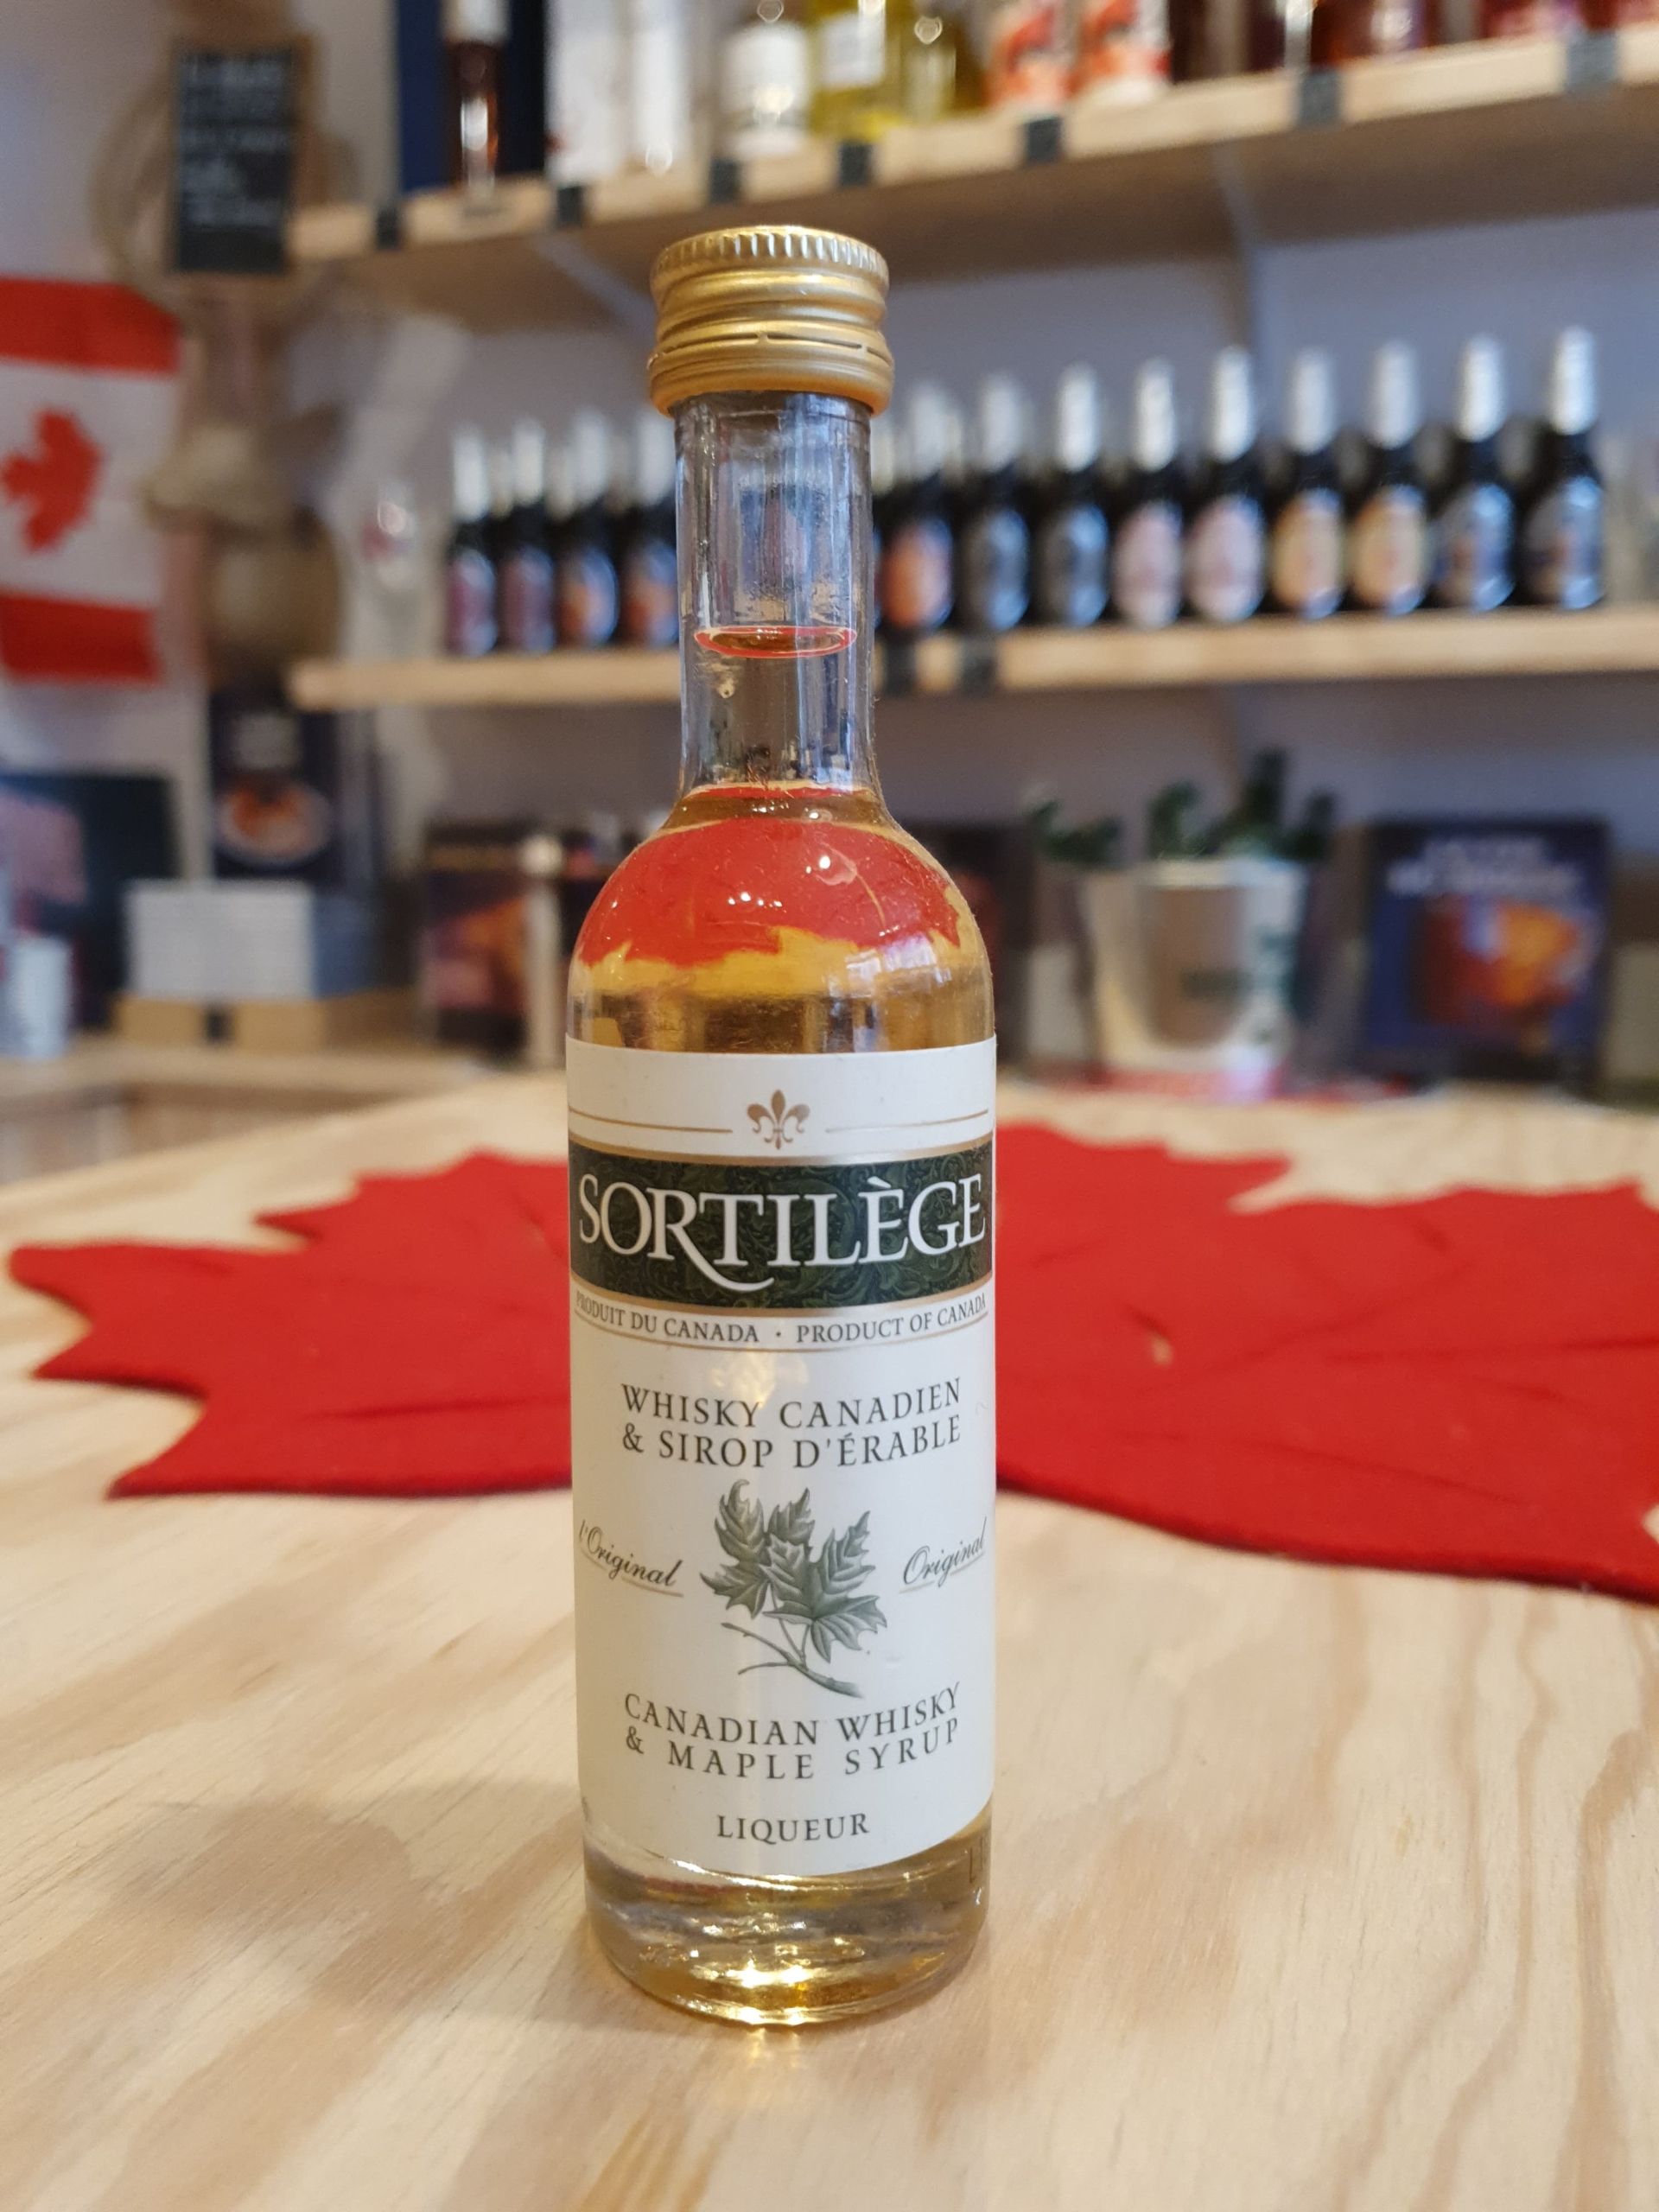 Mignonnette de whisky canadien au sirop d'érable pur du Québec - Sortilège